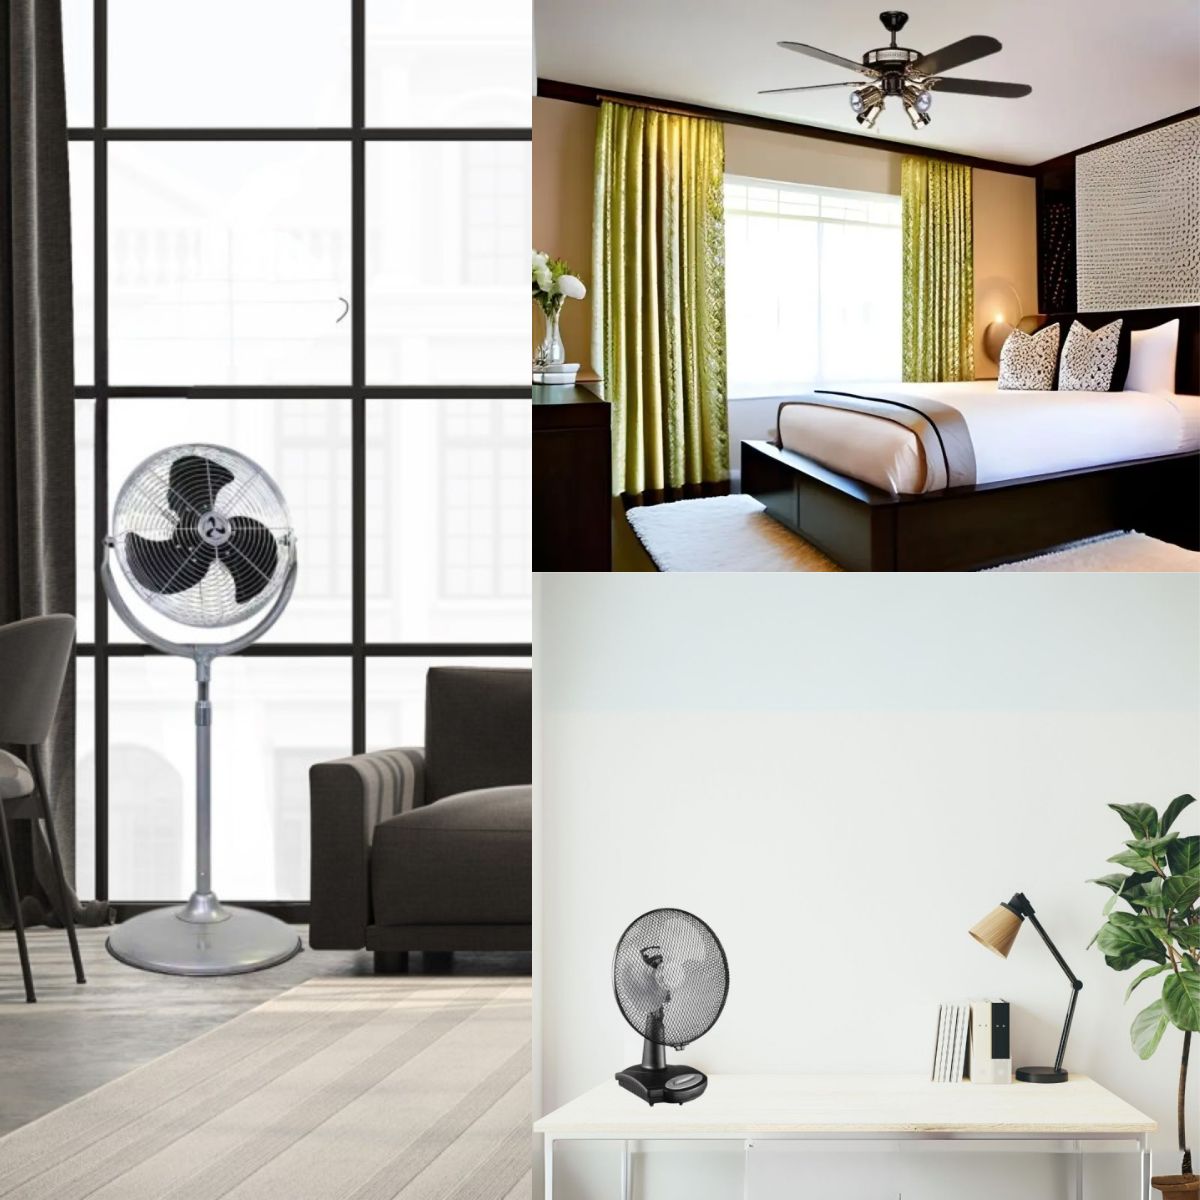 3 solutions de ventilateur : laquelle rafraichir le mieux une pièce ? (Ventilateur sur pied, ventilateur de plafond, ventilateur de table)